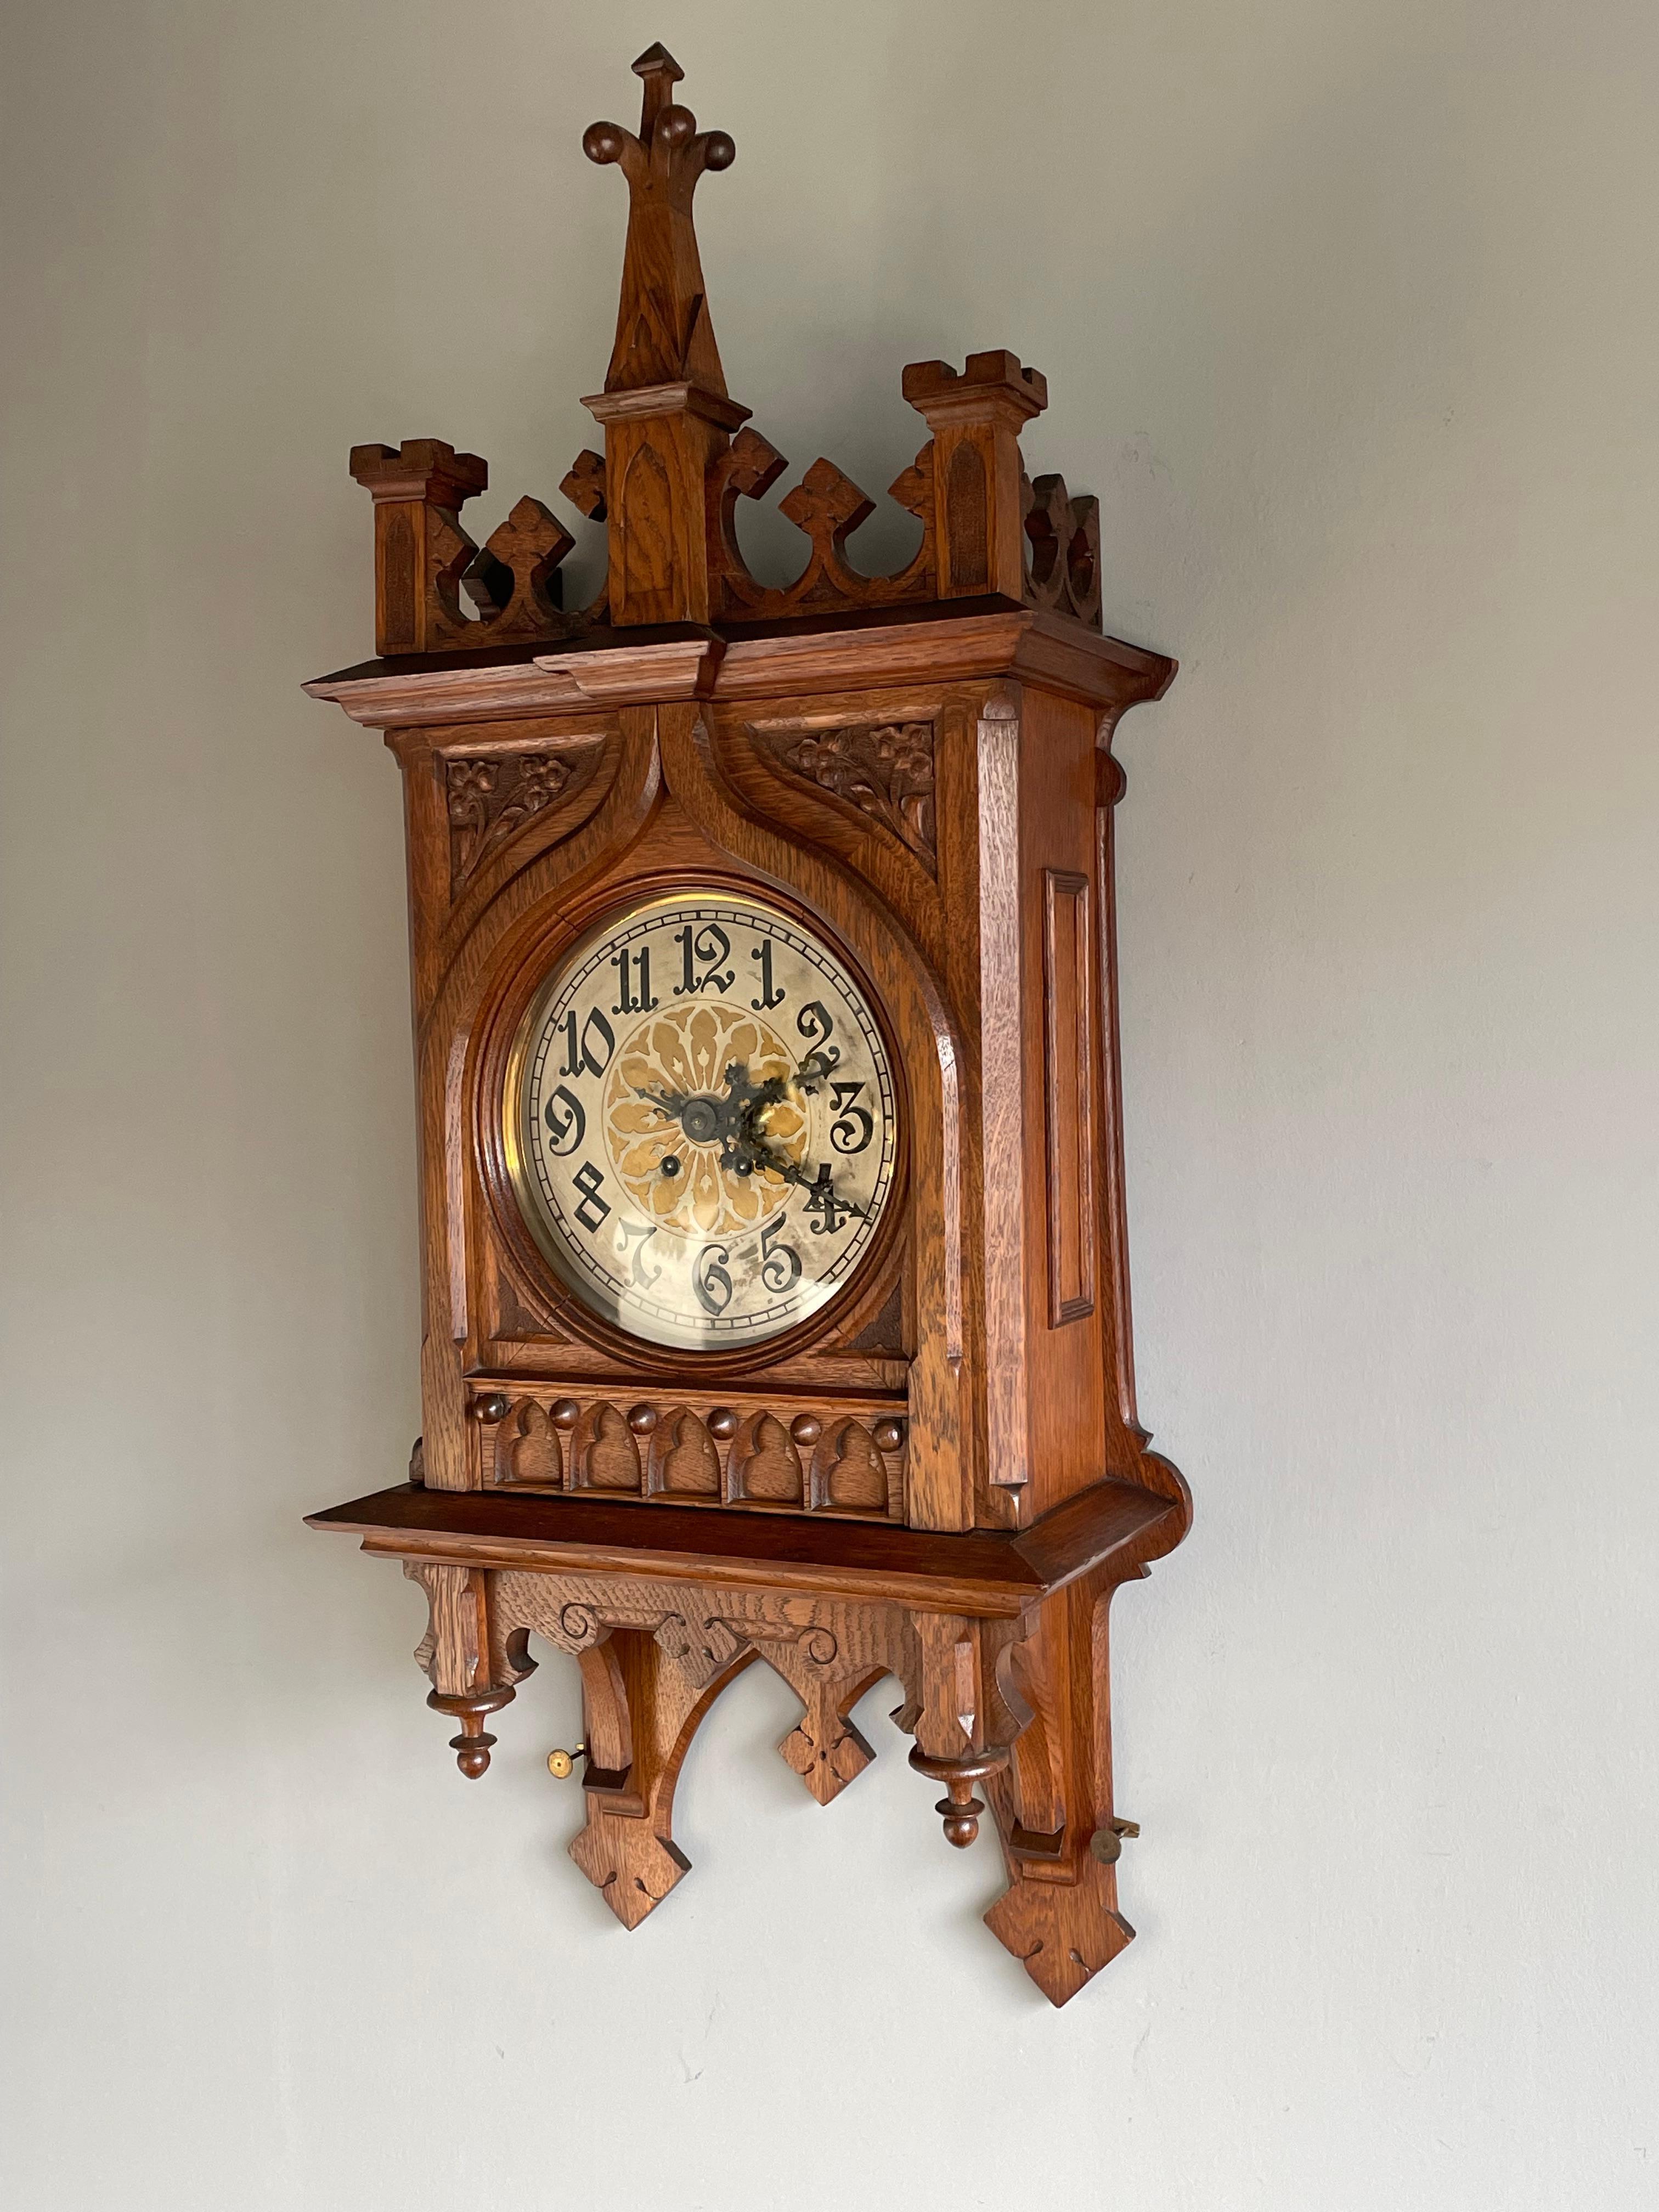 Große und beeindruckende Uhr mit einer Fülle von gotischen Details.

Gotische Wanduhren sind großartige dekorative Antiquitäten, und dieses Exemplar aus der Zeit der Jahrhundertwende hat unserer Meinung nach die perfekte Größe und das perfekte